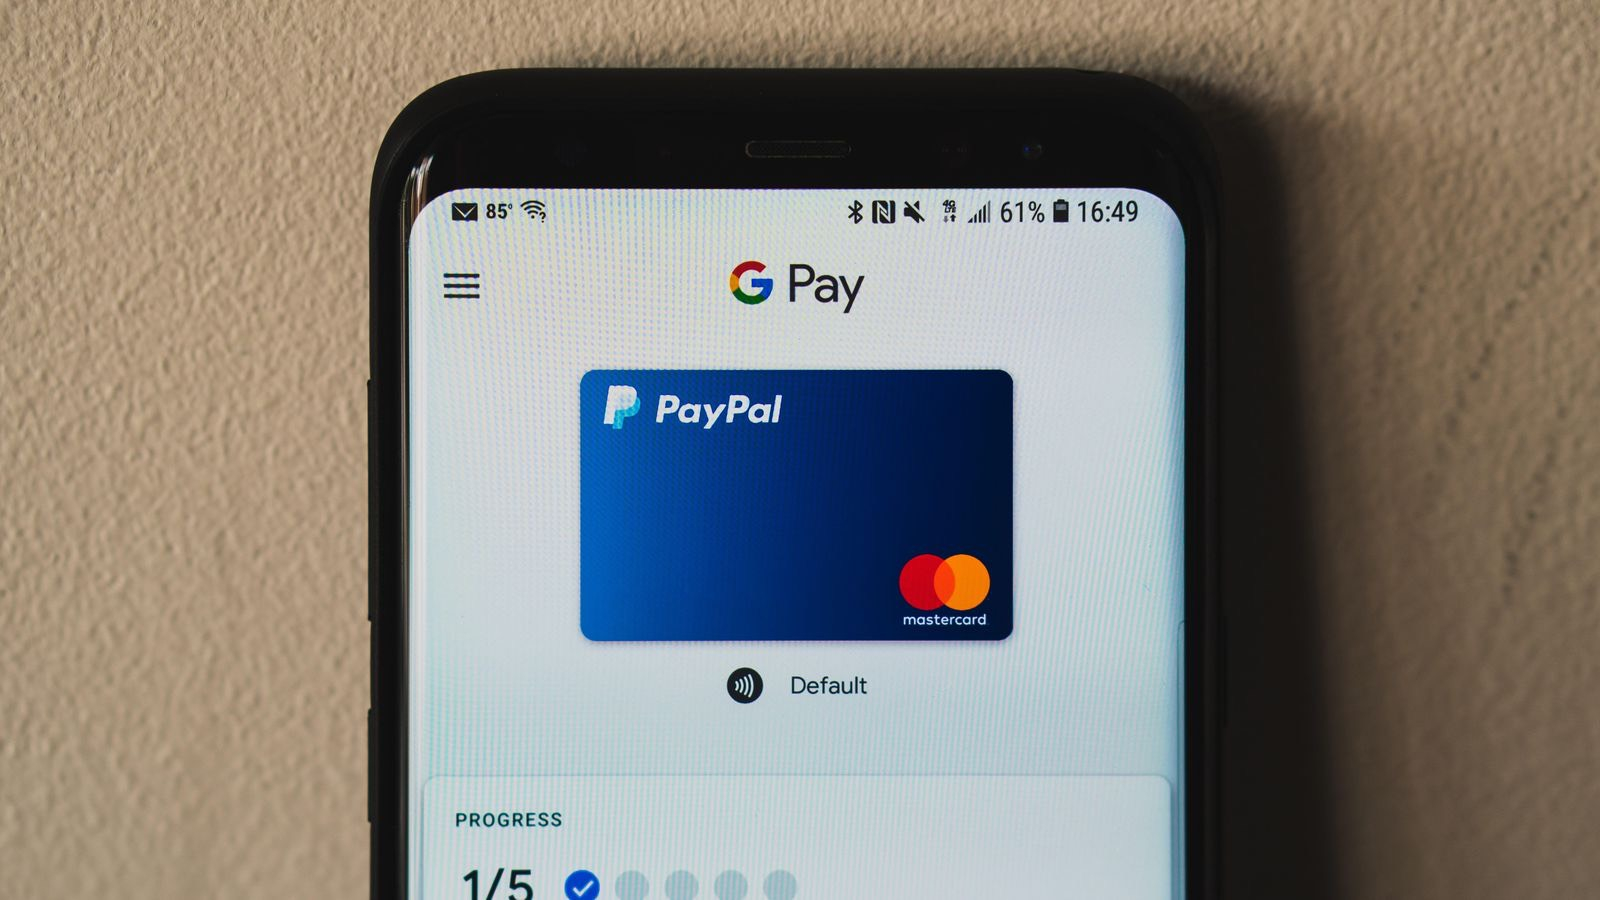 €10 PayPal-Tegoed Bij Betaling Google Pay @ PayPal ...